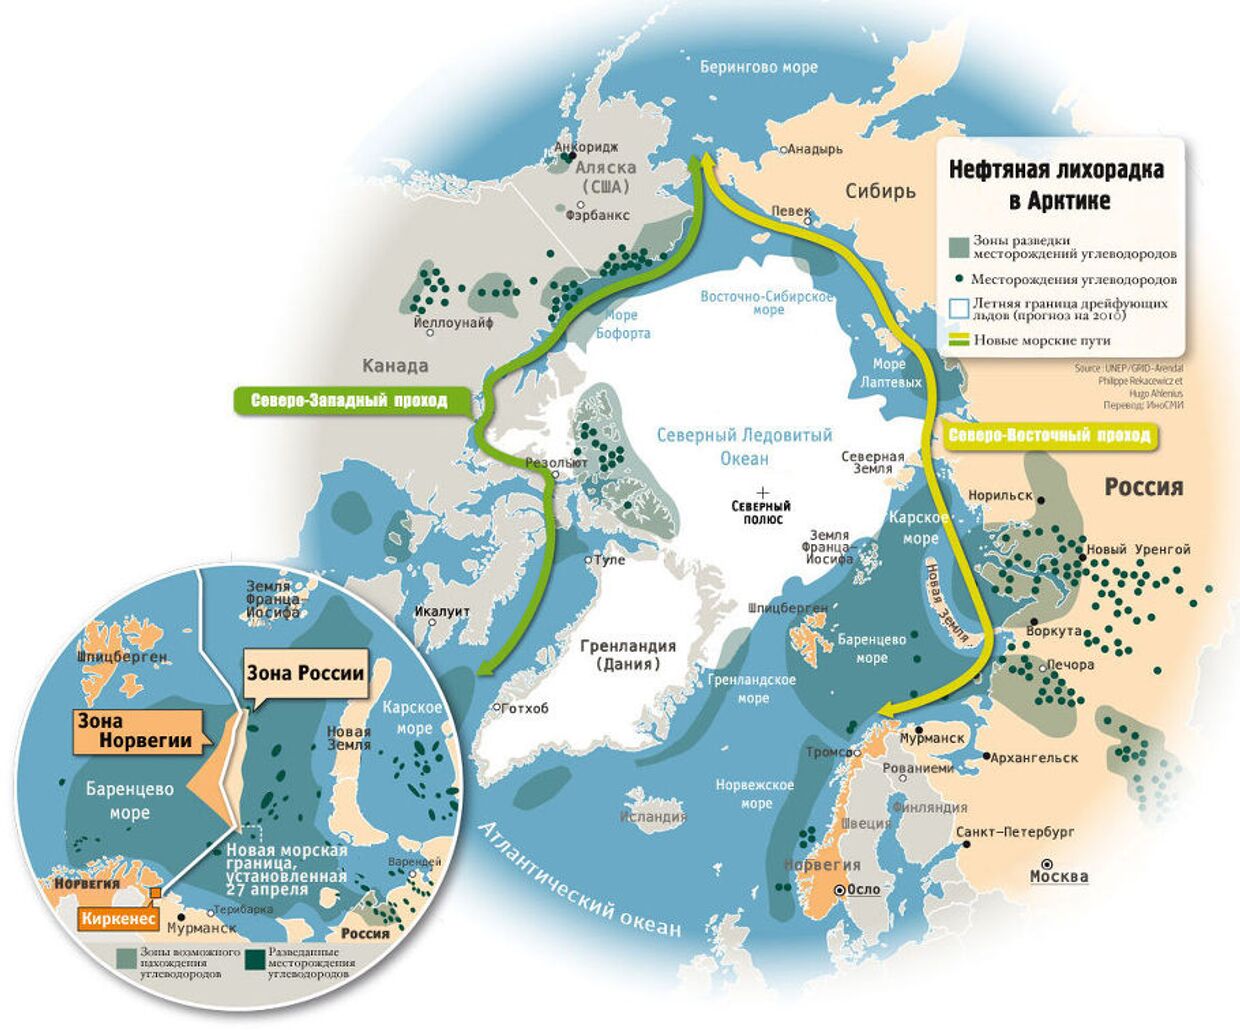 Нефтяная лихорадка в Арктике